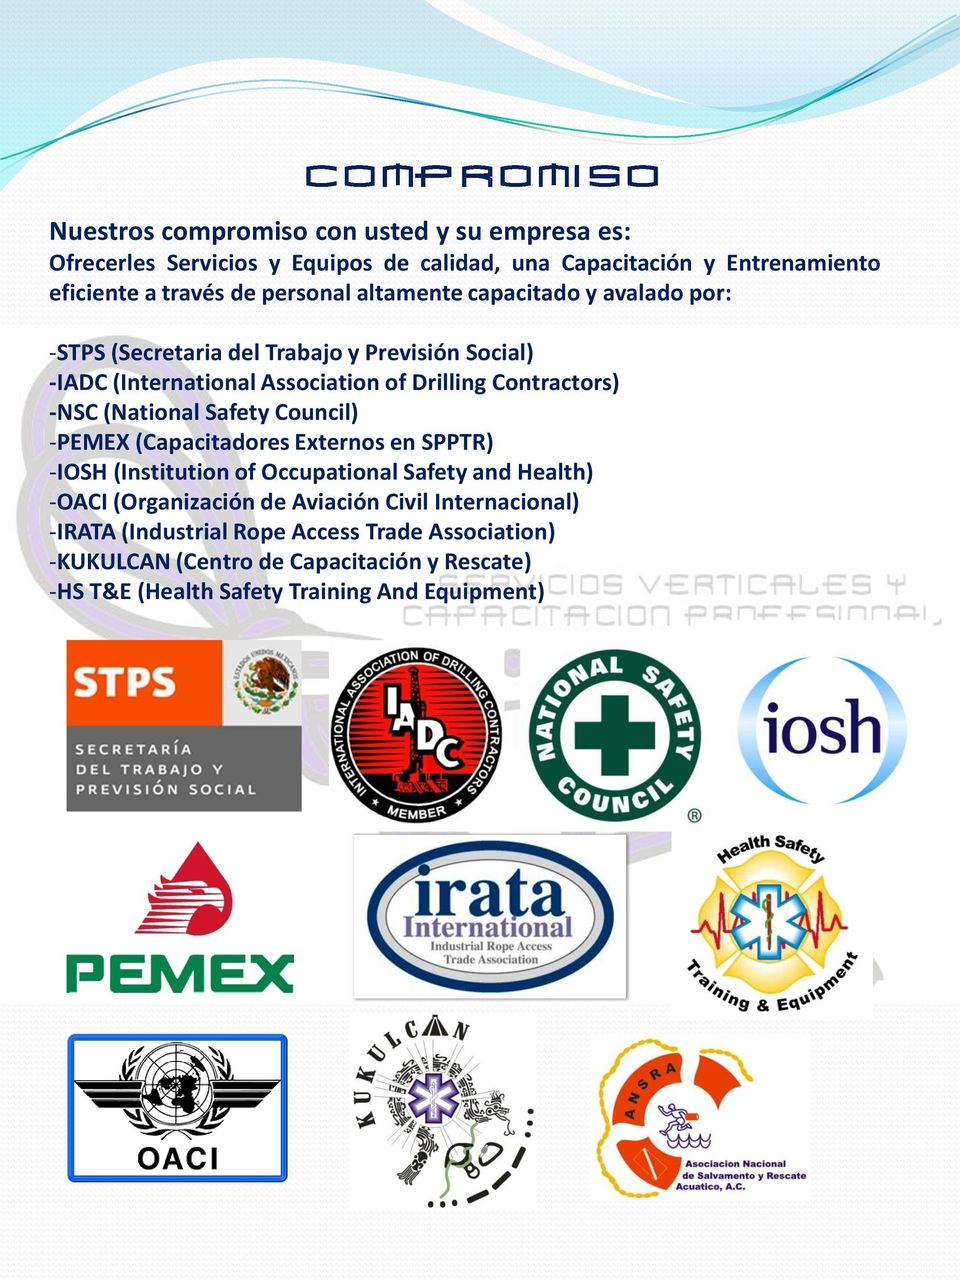 (National Safety Council) -PEMEX (Capacitadores Externos en SPPTR) -IOSH (Institution of Occupational Safety and Health) -OACI (Organización de Aviación